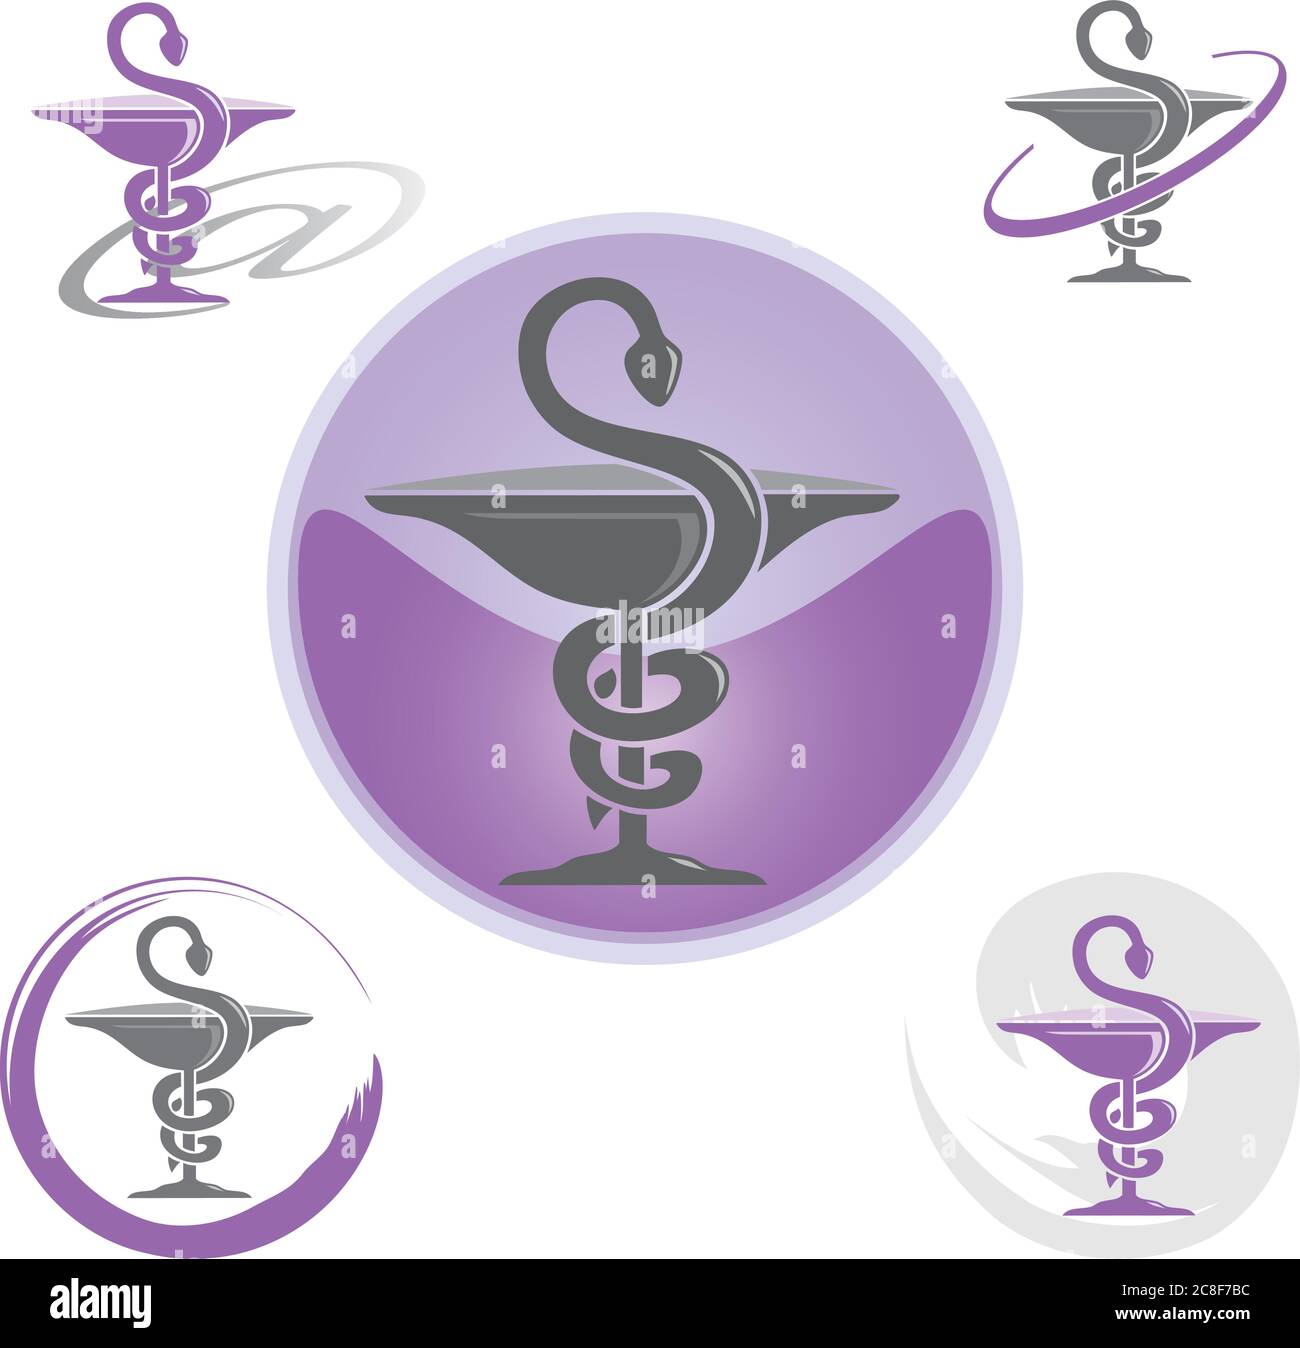 Ensemble d'icônes avec symbole Caduceus violet - Santé / pharmacie Illustration de Vecteur